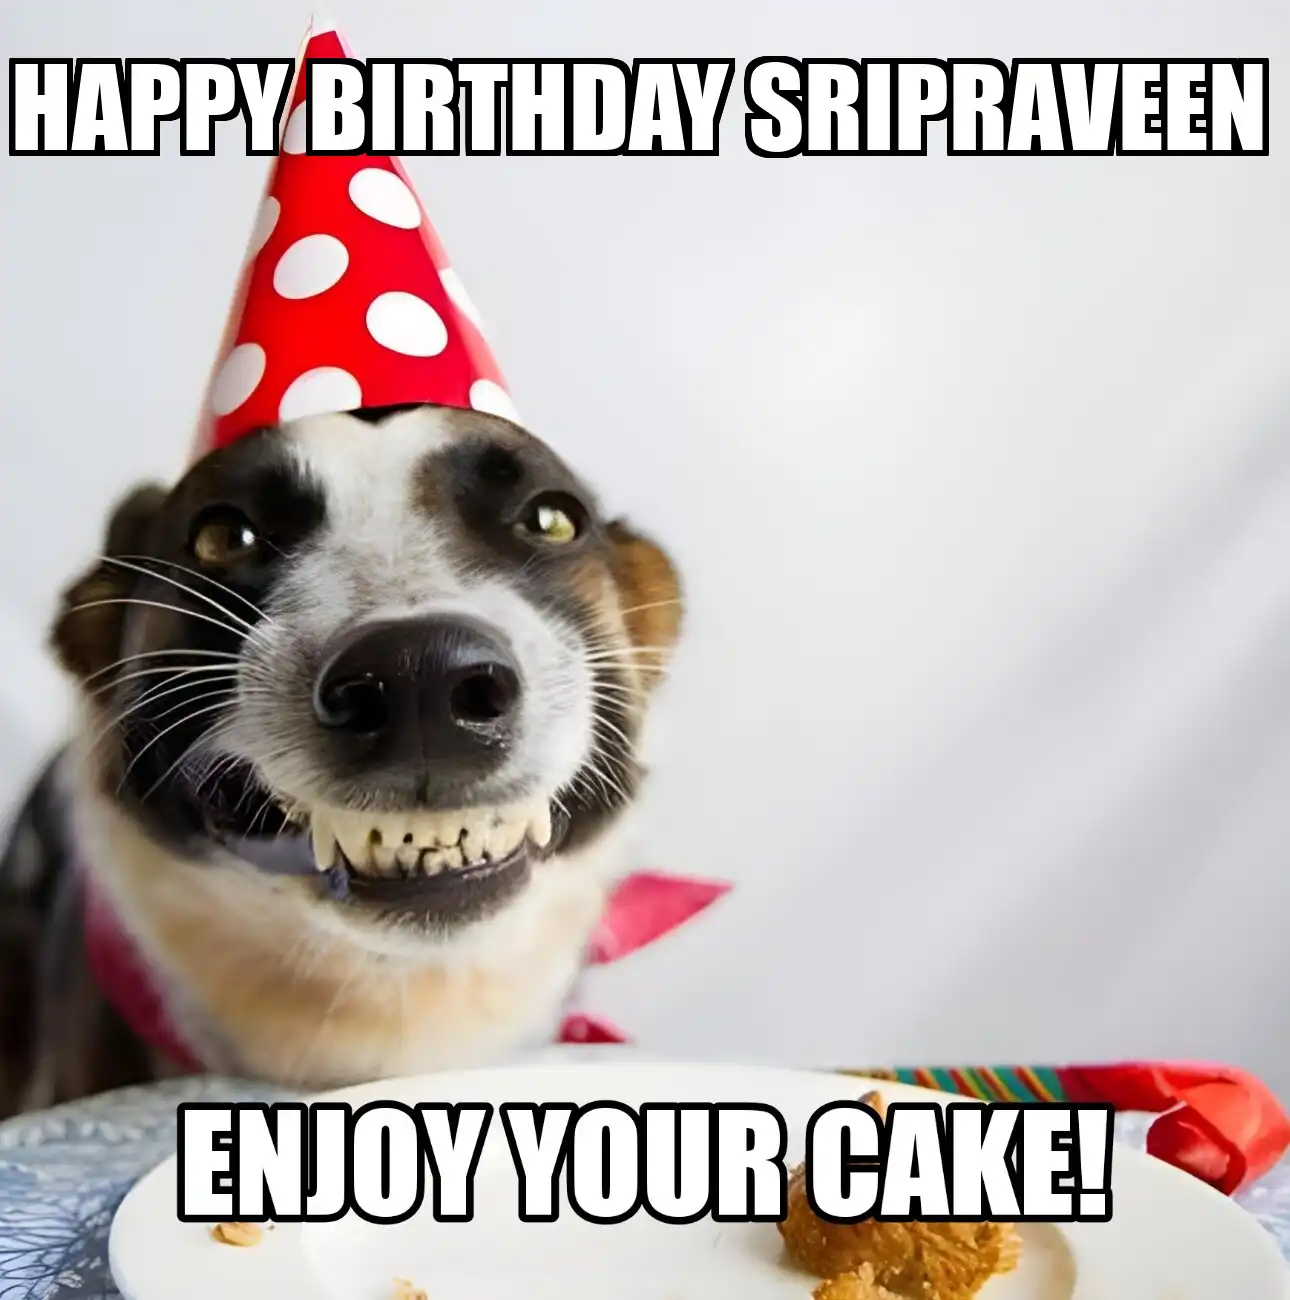 Happy Birthday Sripraveen Enjoy Your Cake Dog Meme